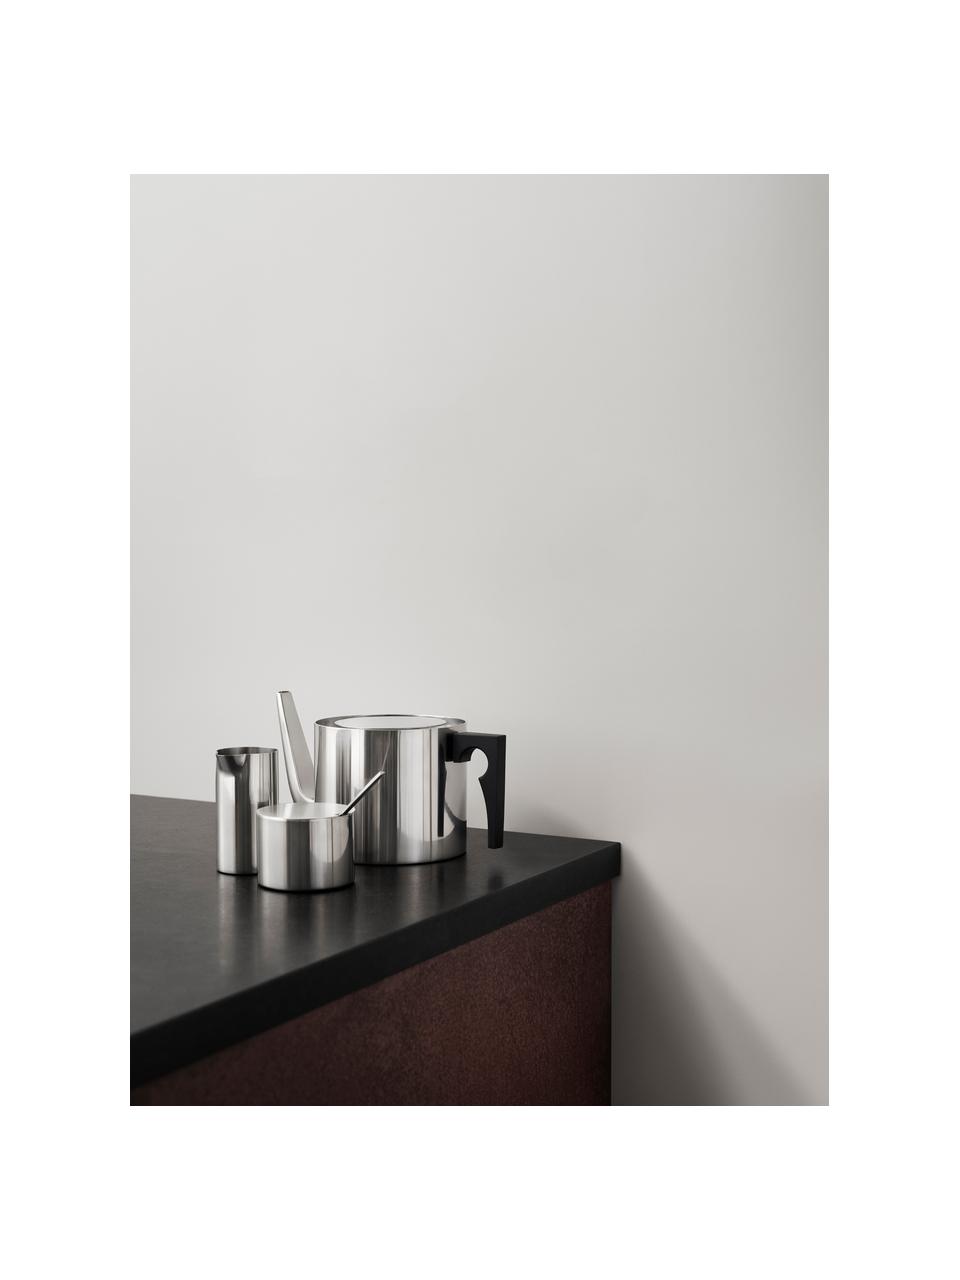 Tetera Arne Jacobsen, 1,25 L, Estructura: acero inoxidable, Plateado, 1,25 L